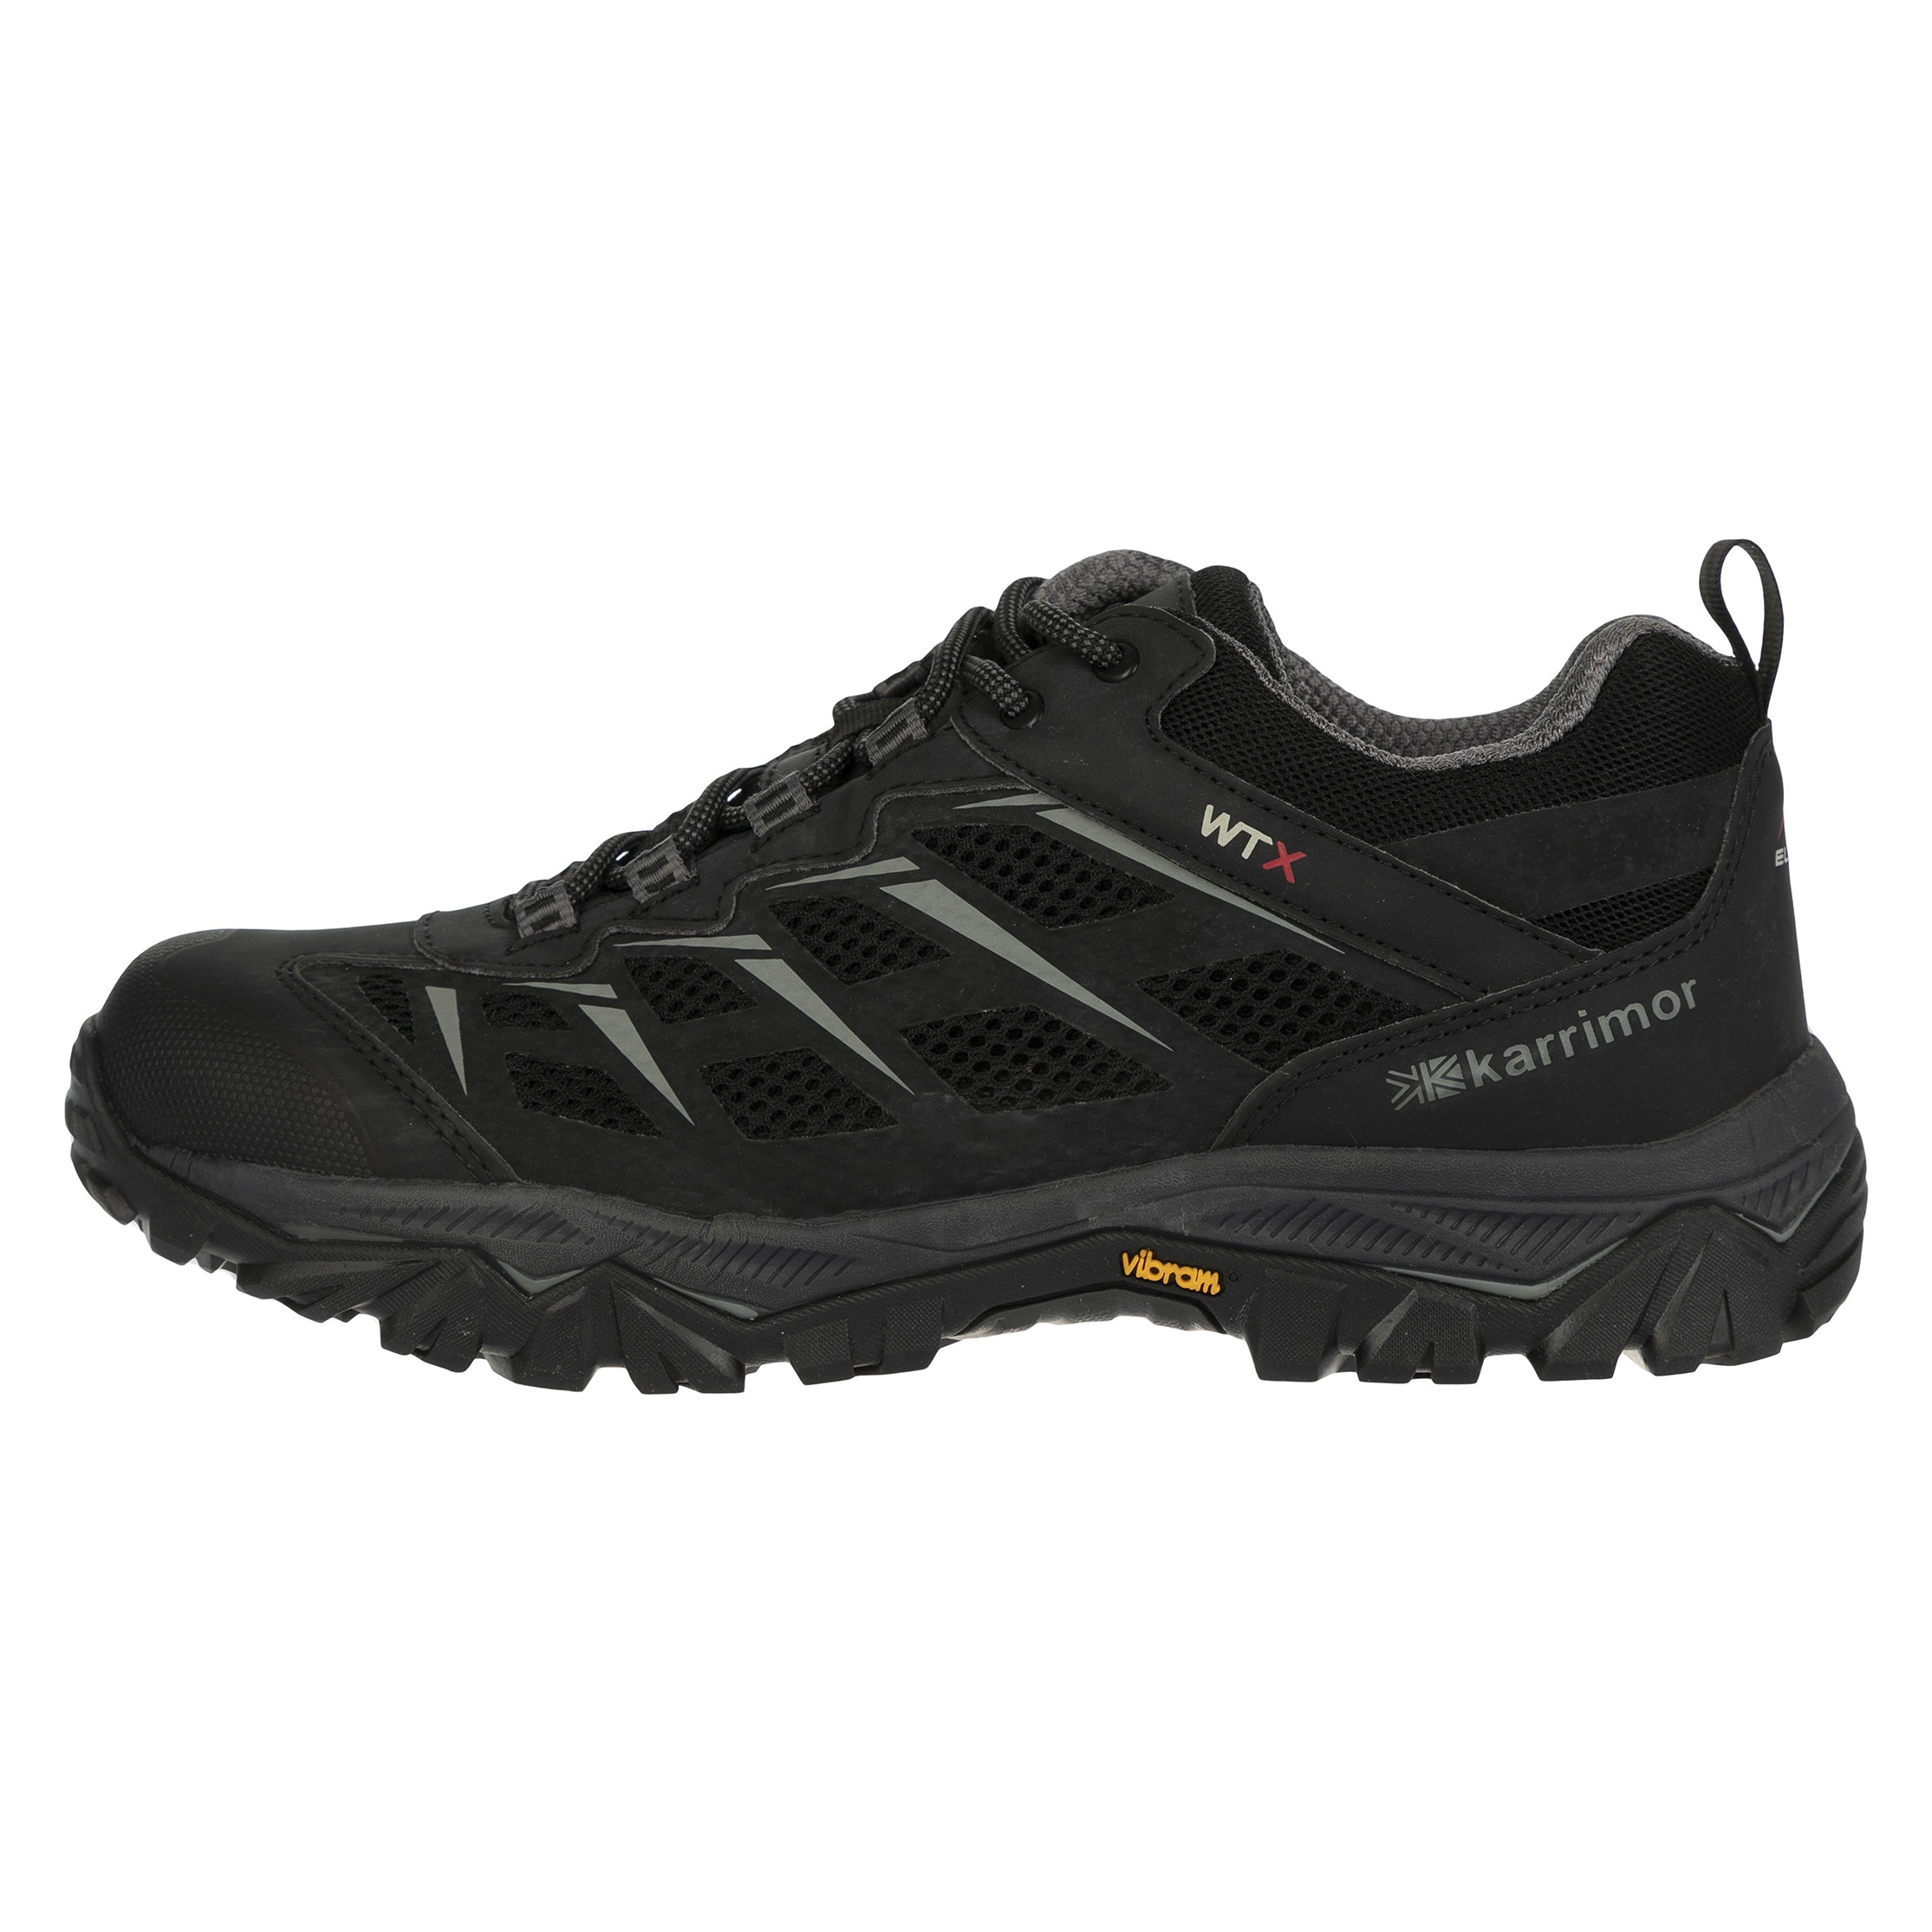 کفش کوهنوردی مردانه کریمور مدل WTX کد IM-210